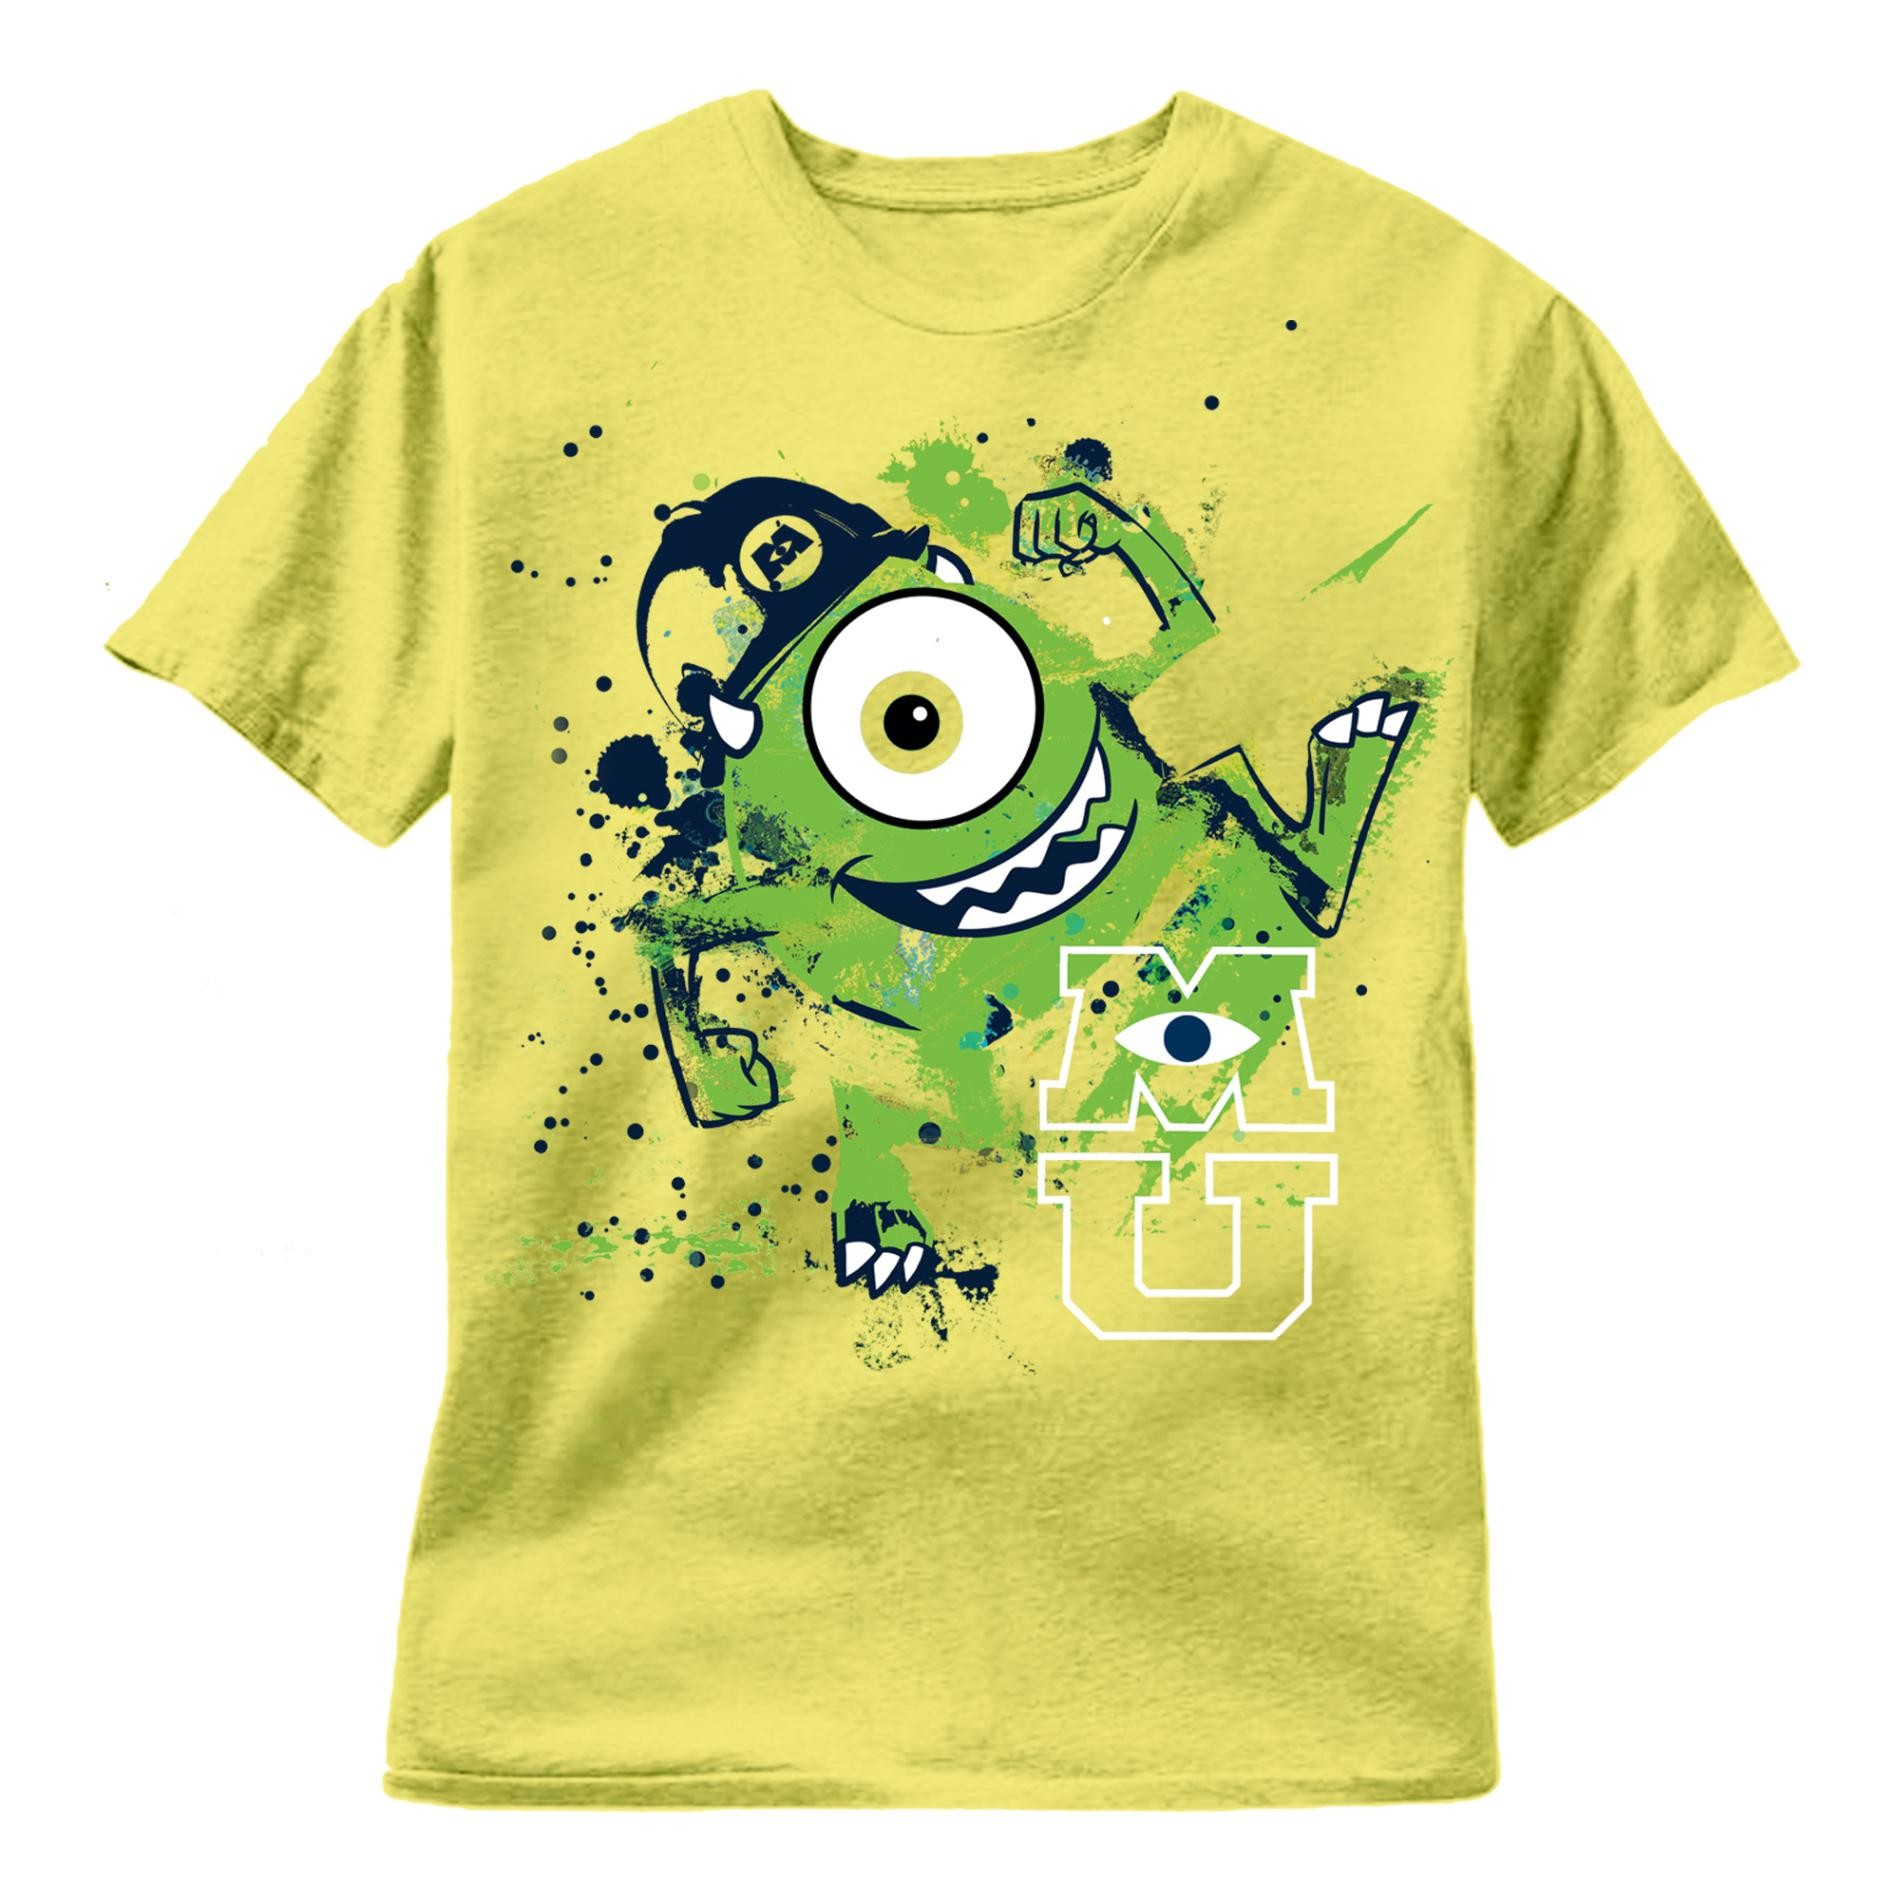 Disney Boy's Graphic T-Shirt - Mike Wazowski